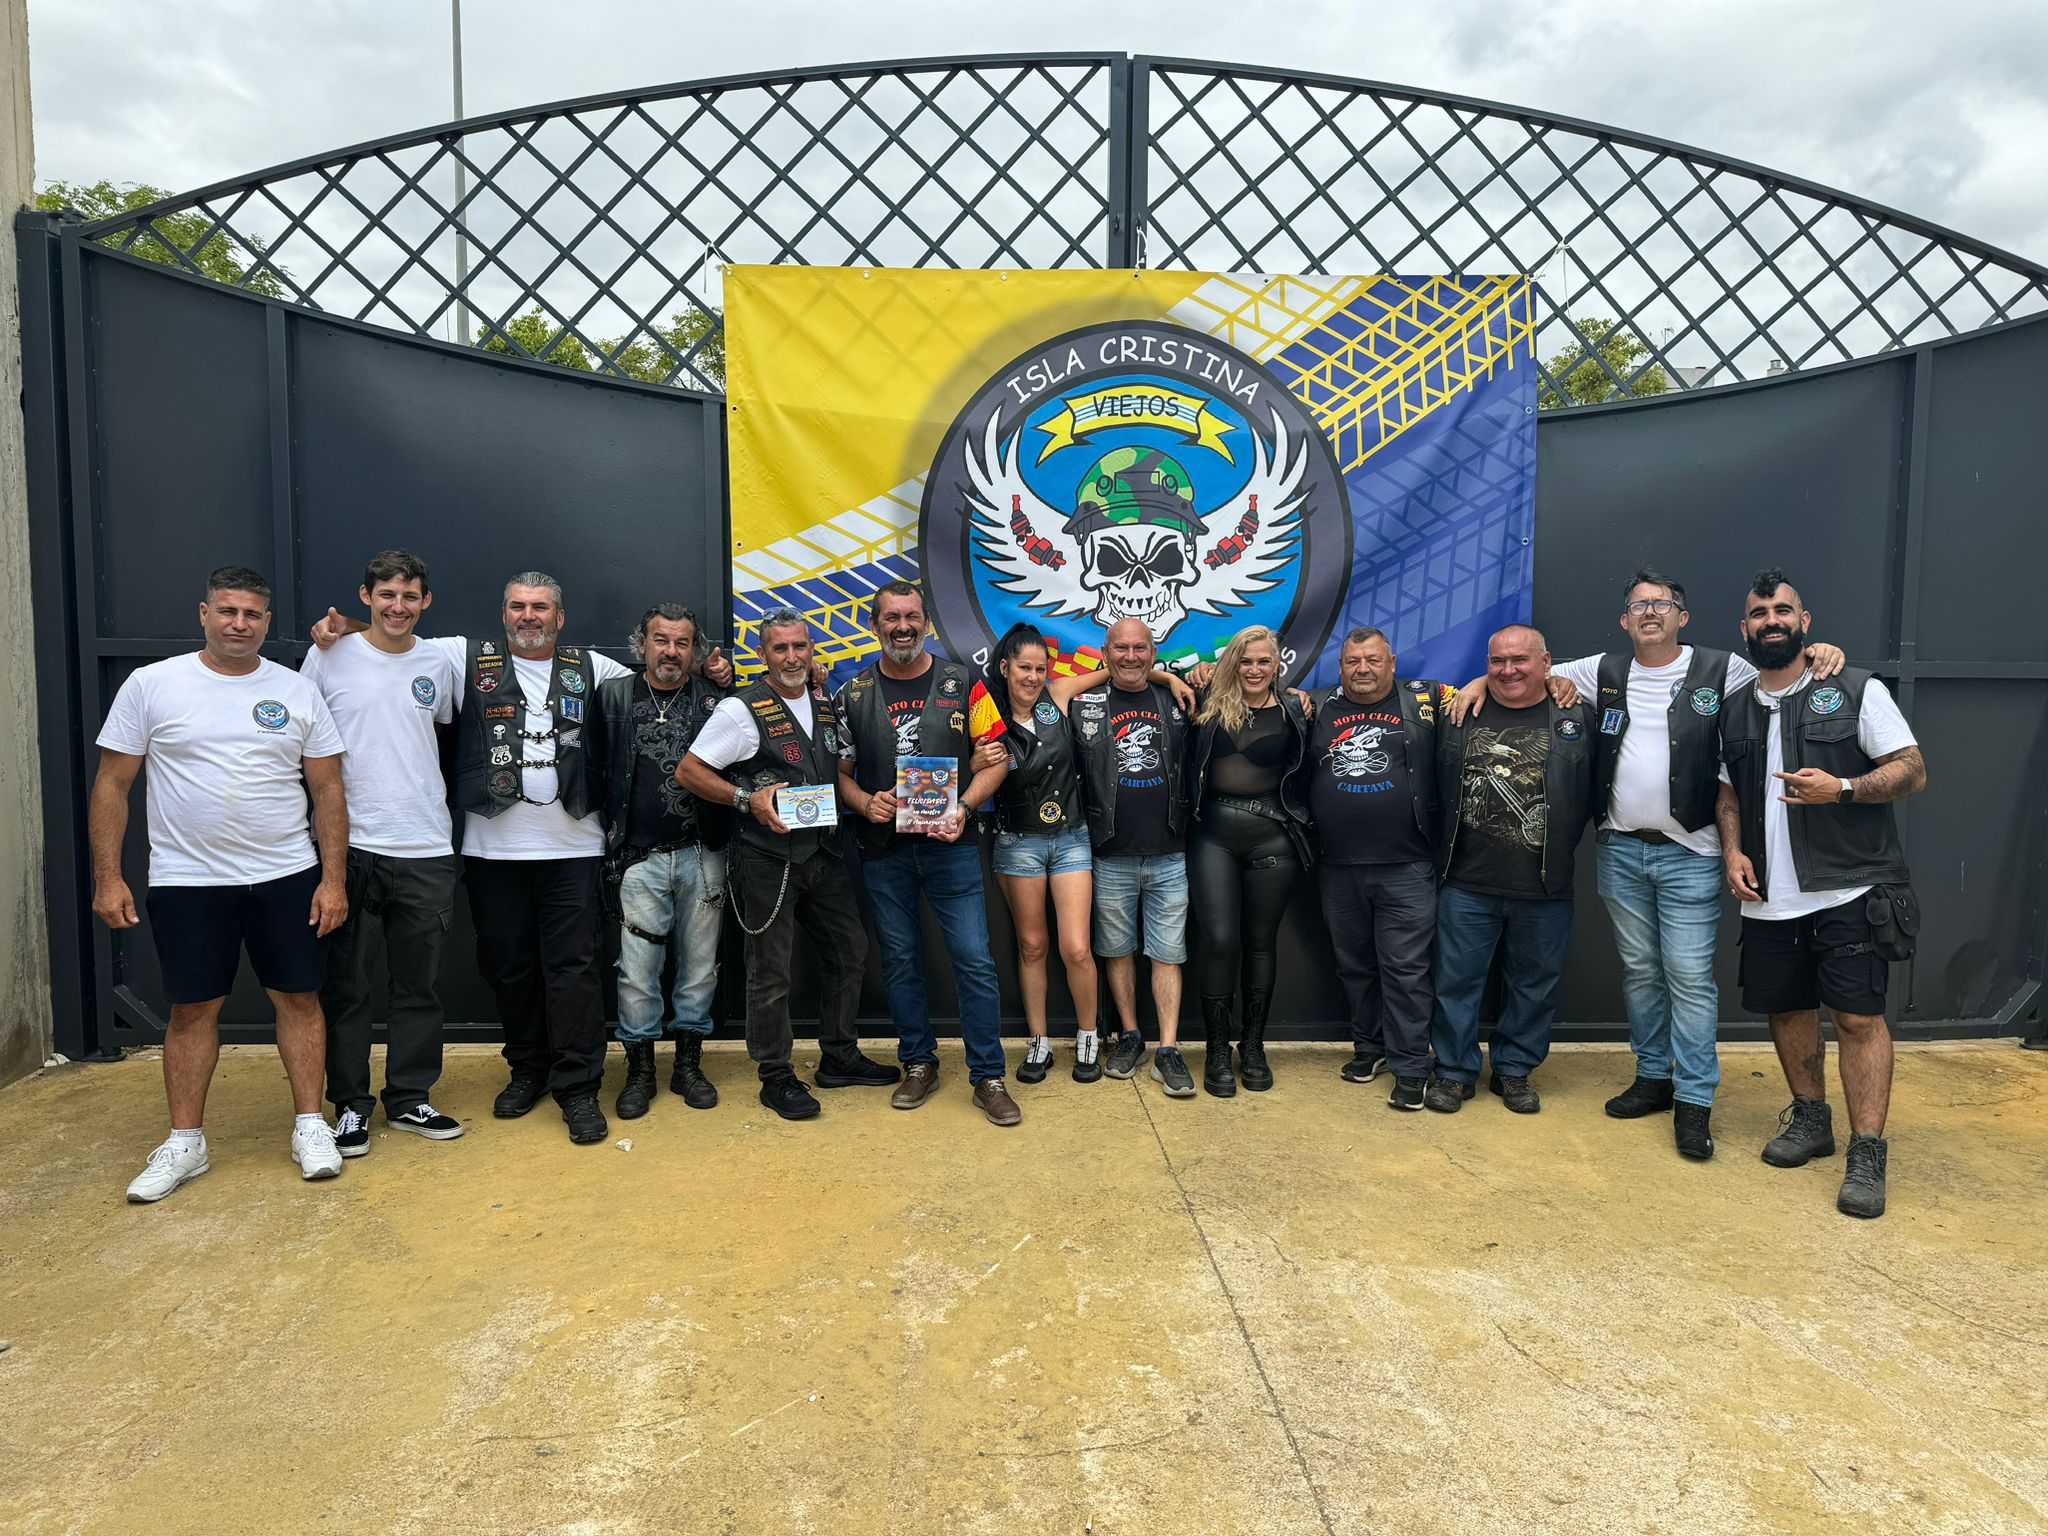 Celebrada con éxito la jornada deportiva organizada por los “Viejos Amigos La Higuerita”